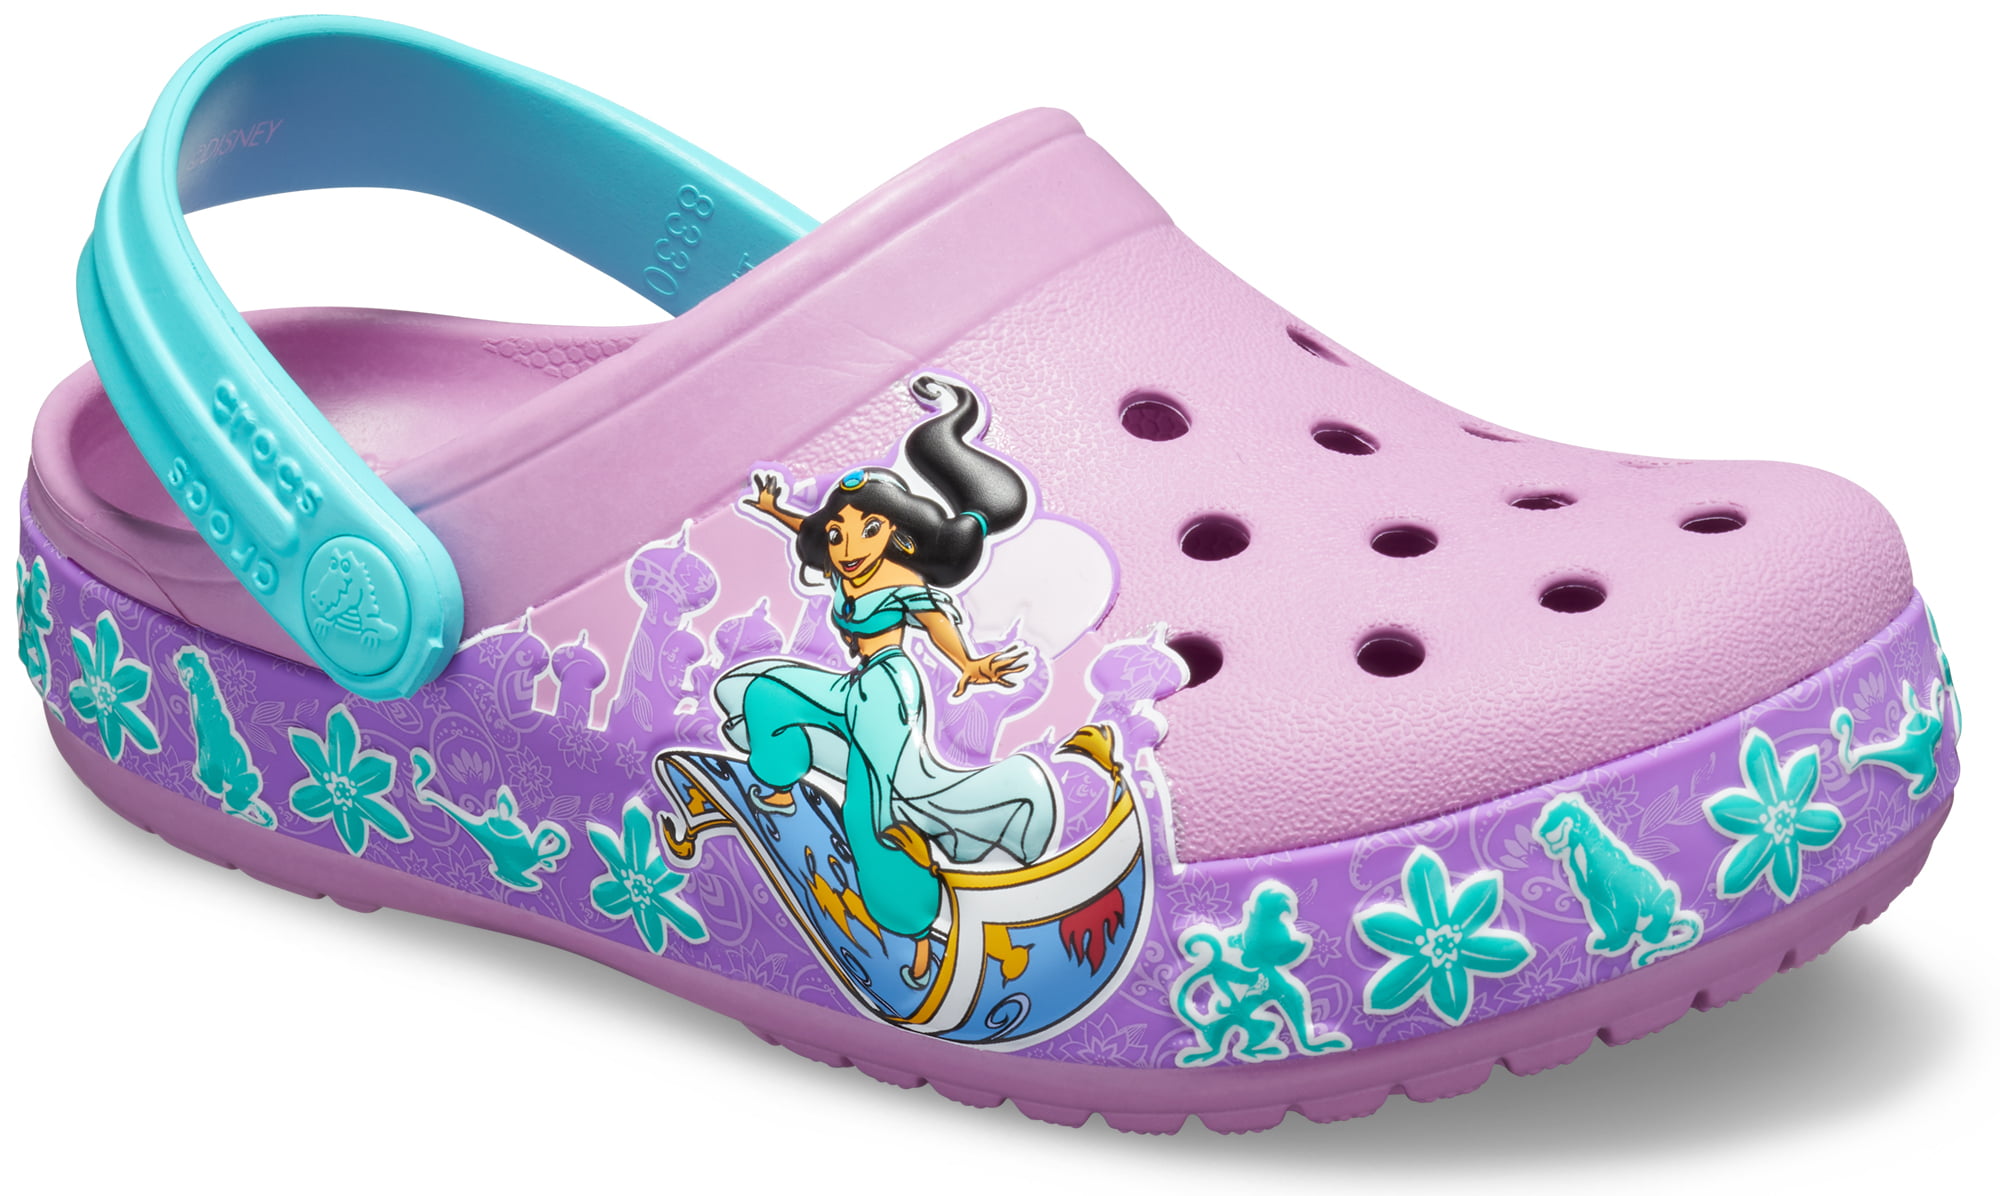 crocs for little girls